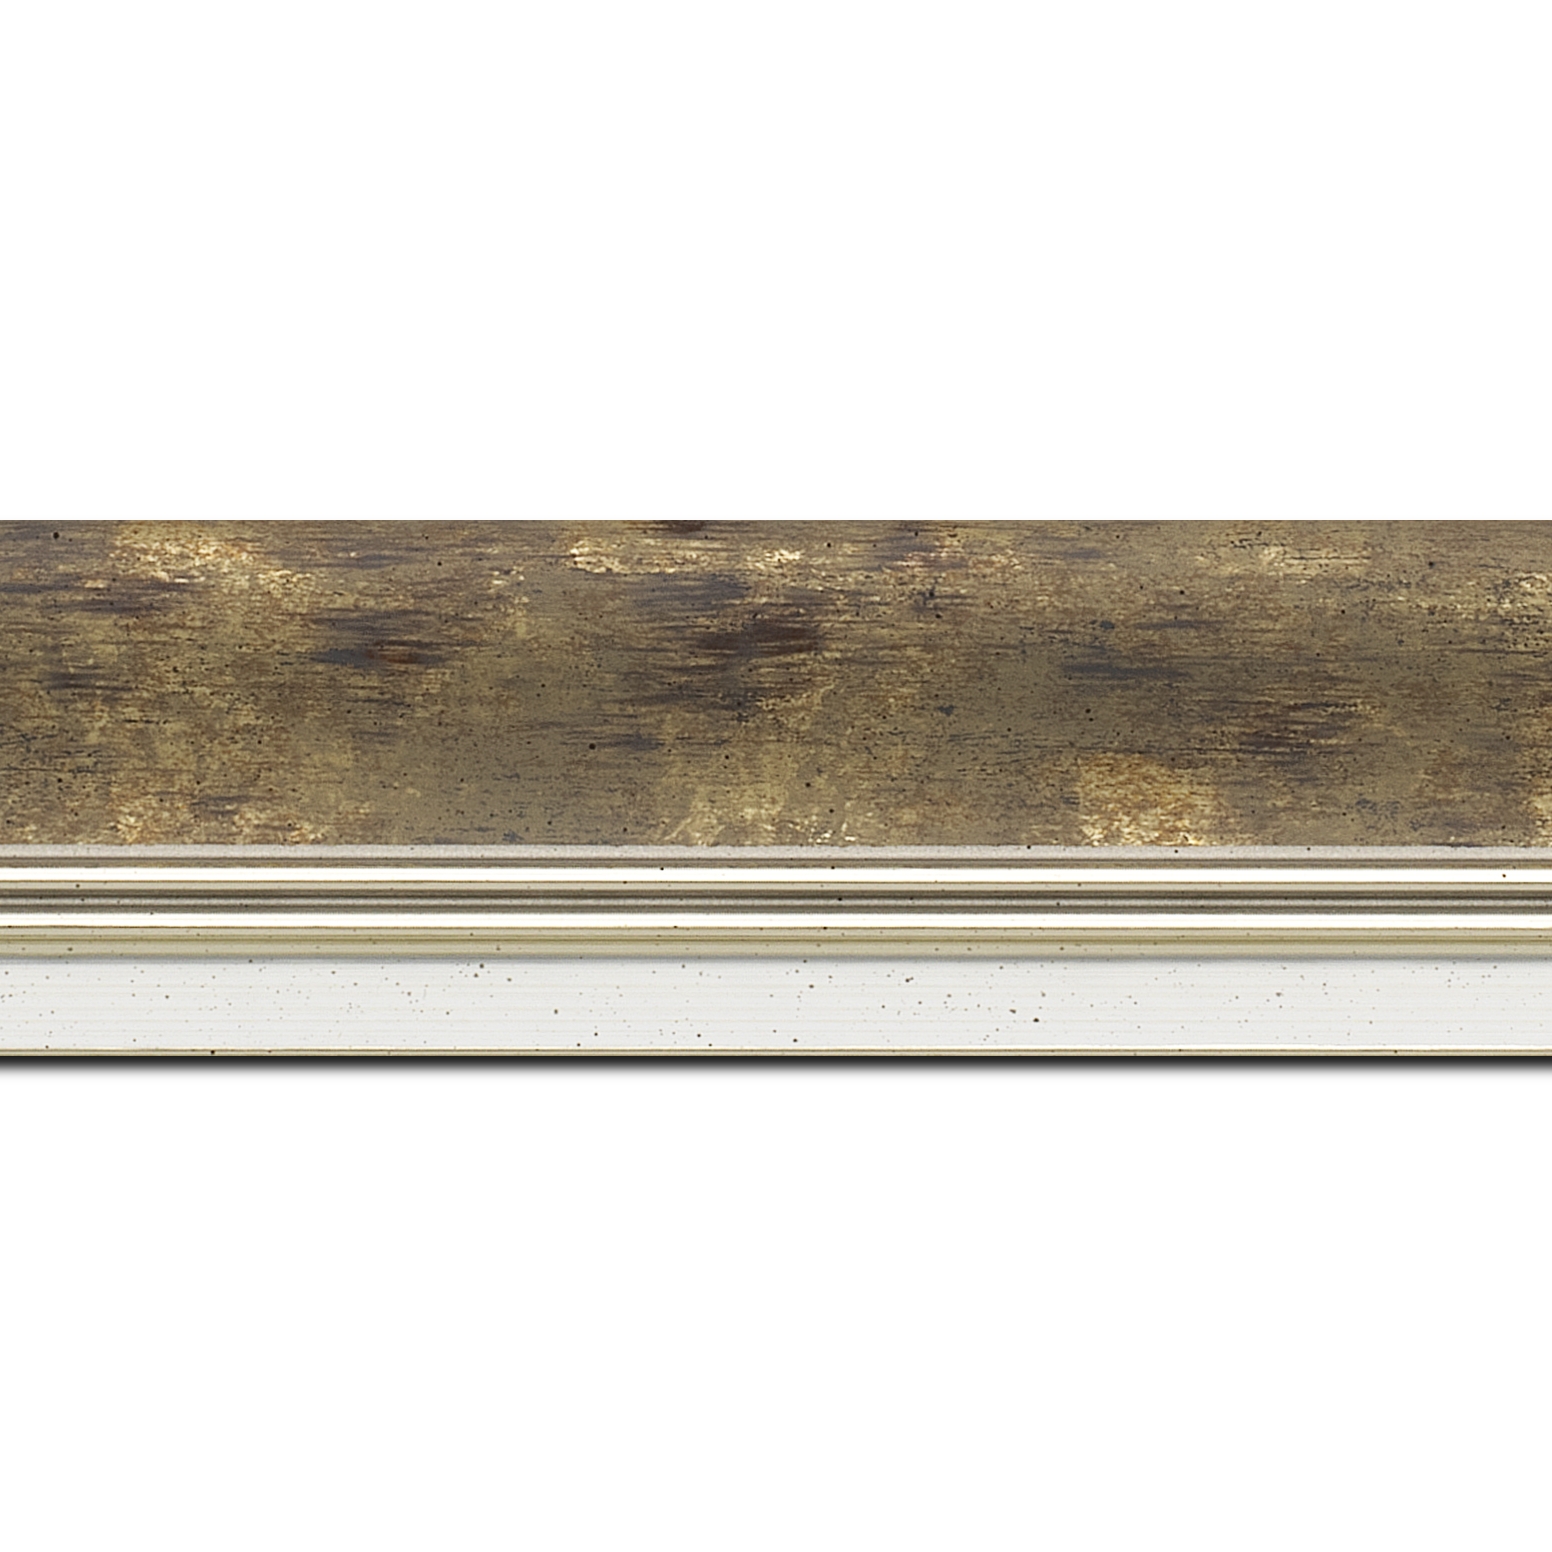 Baguette longueur 1.40m bois profil incurvé largeur 5.7cm de couleur terre patiné fond or marie louise blanche mouchetée filet argent intégré